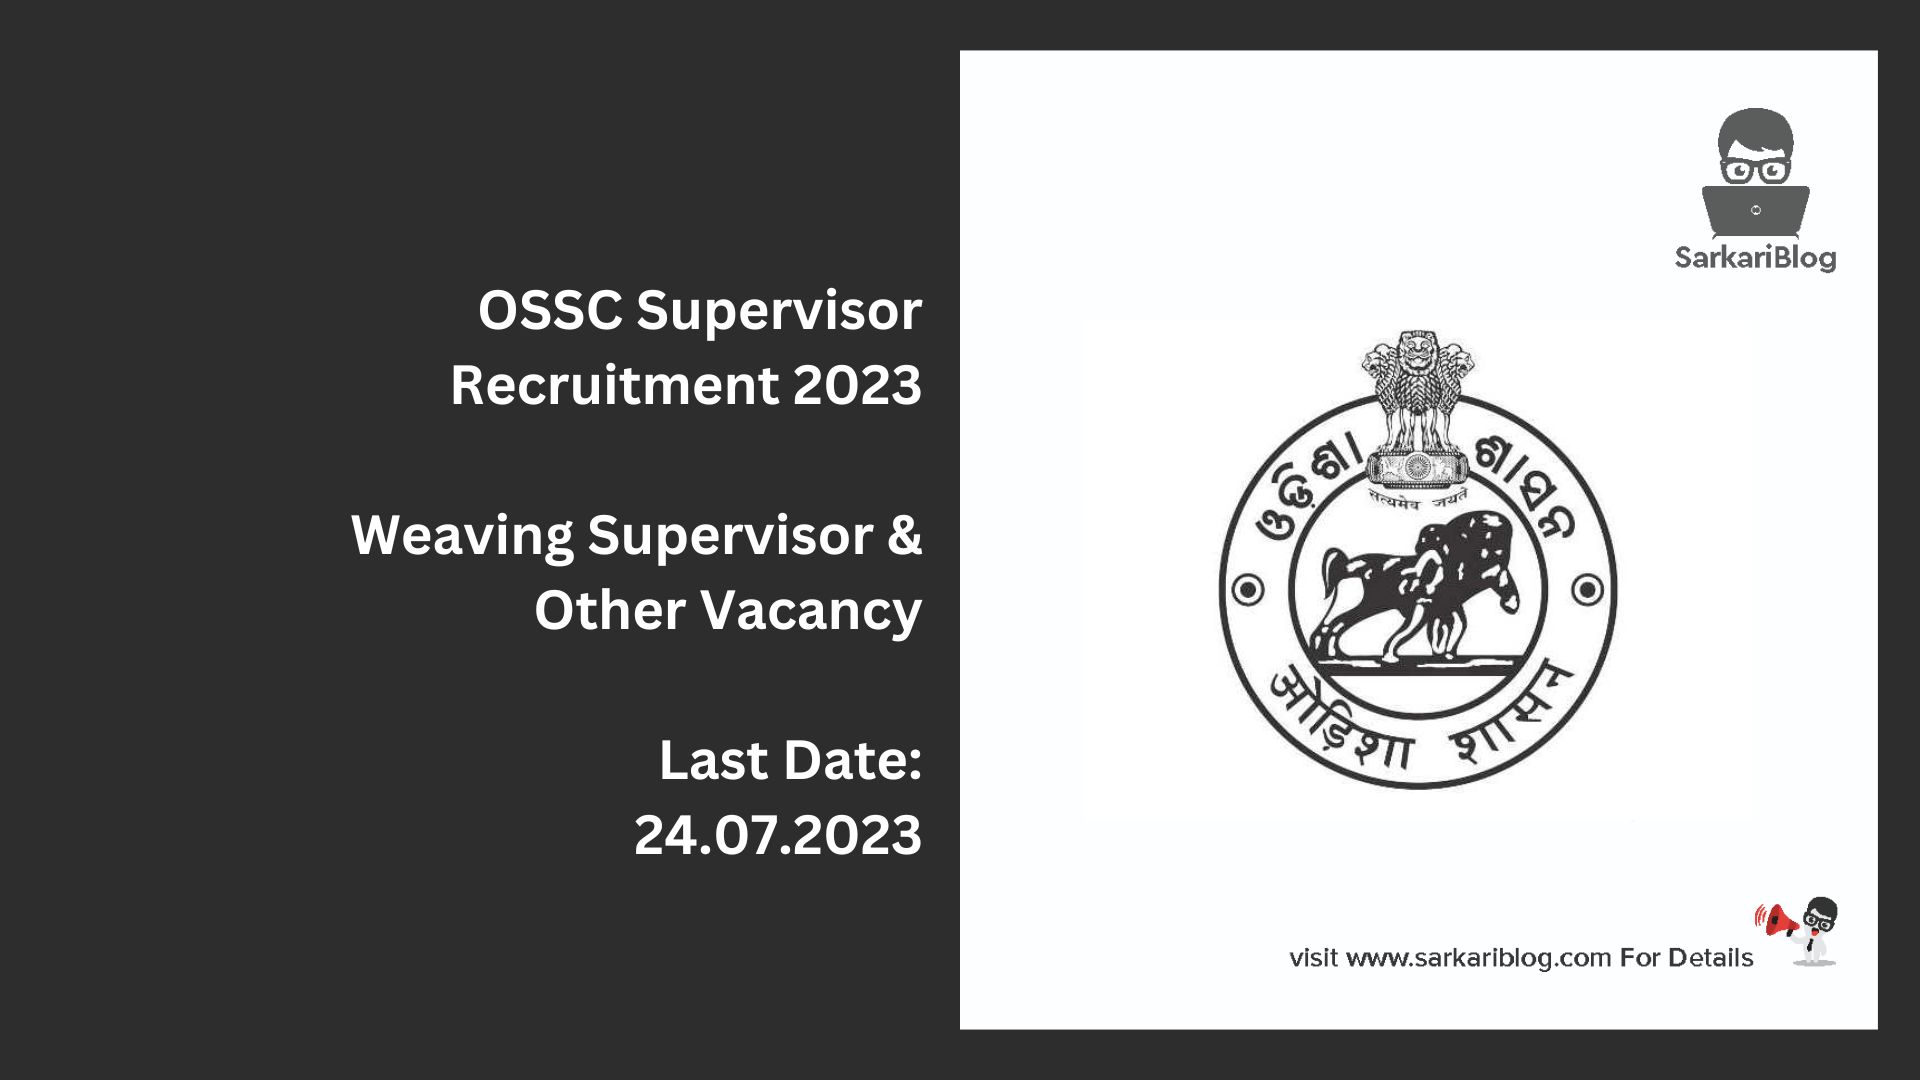 OSSC Supervisor Recruitment 2023